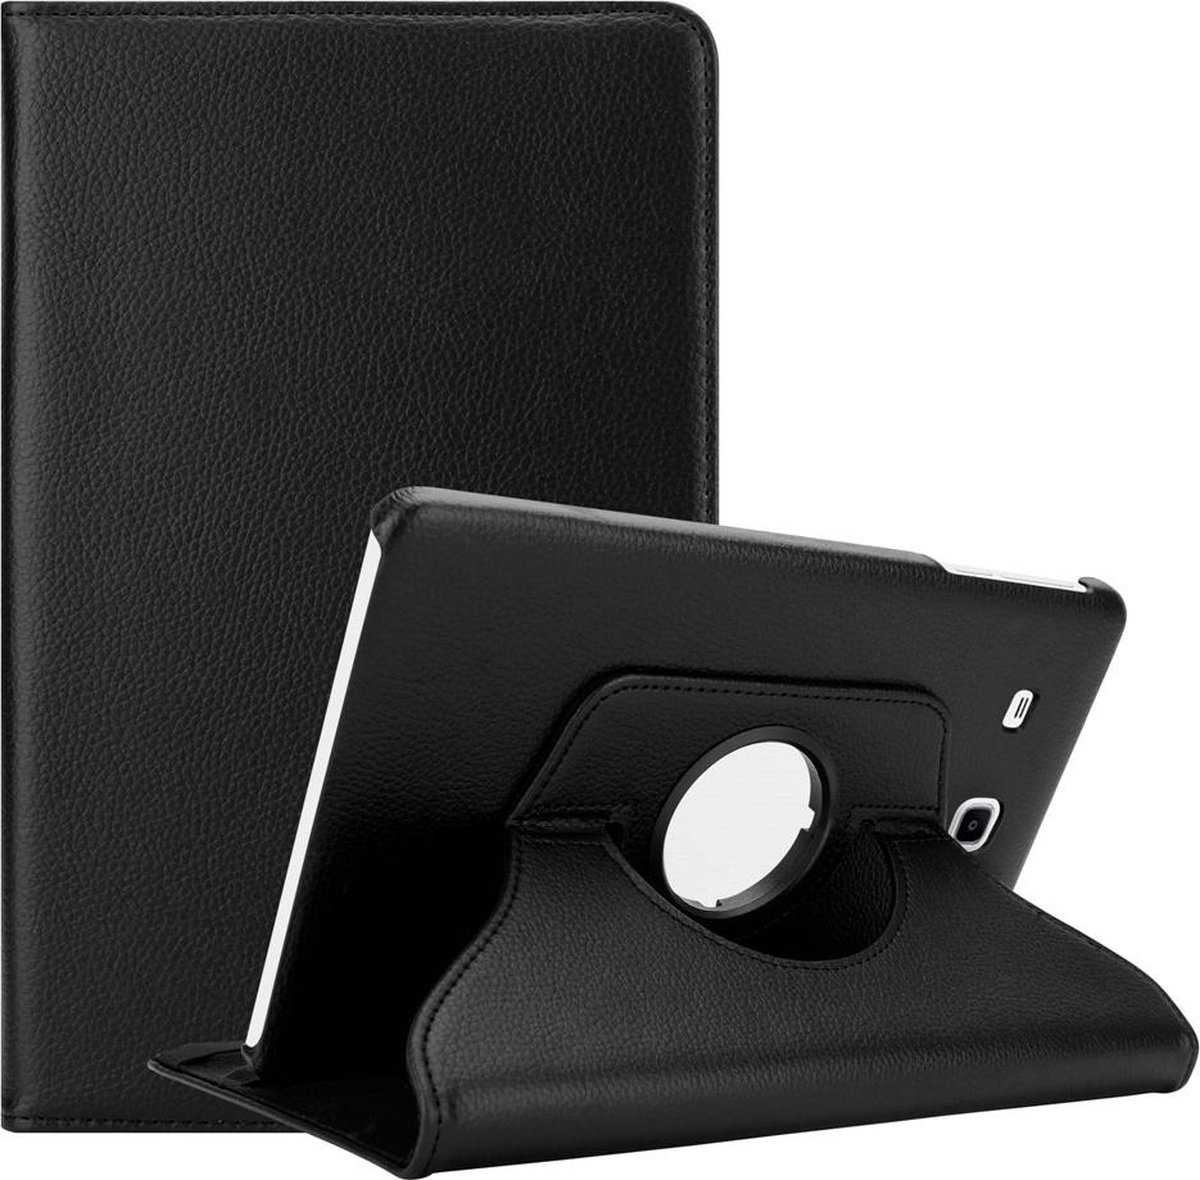 Cadorabo Tablet Hoesje voor Samsung Galaxy Tab E (9.6 inch) in OUDERLING ZWART - Beschermhoes ZONDER auto Wake Up, met stand functie en elastische band sluiting Book Case Cover Etui